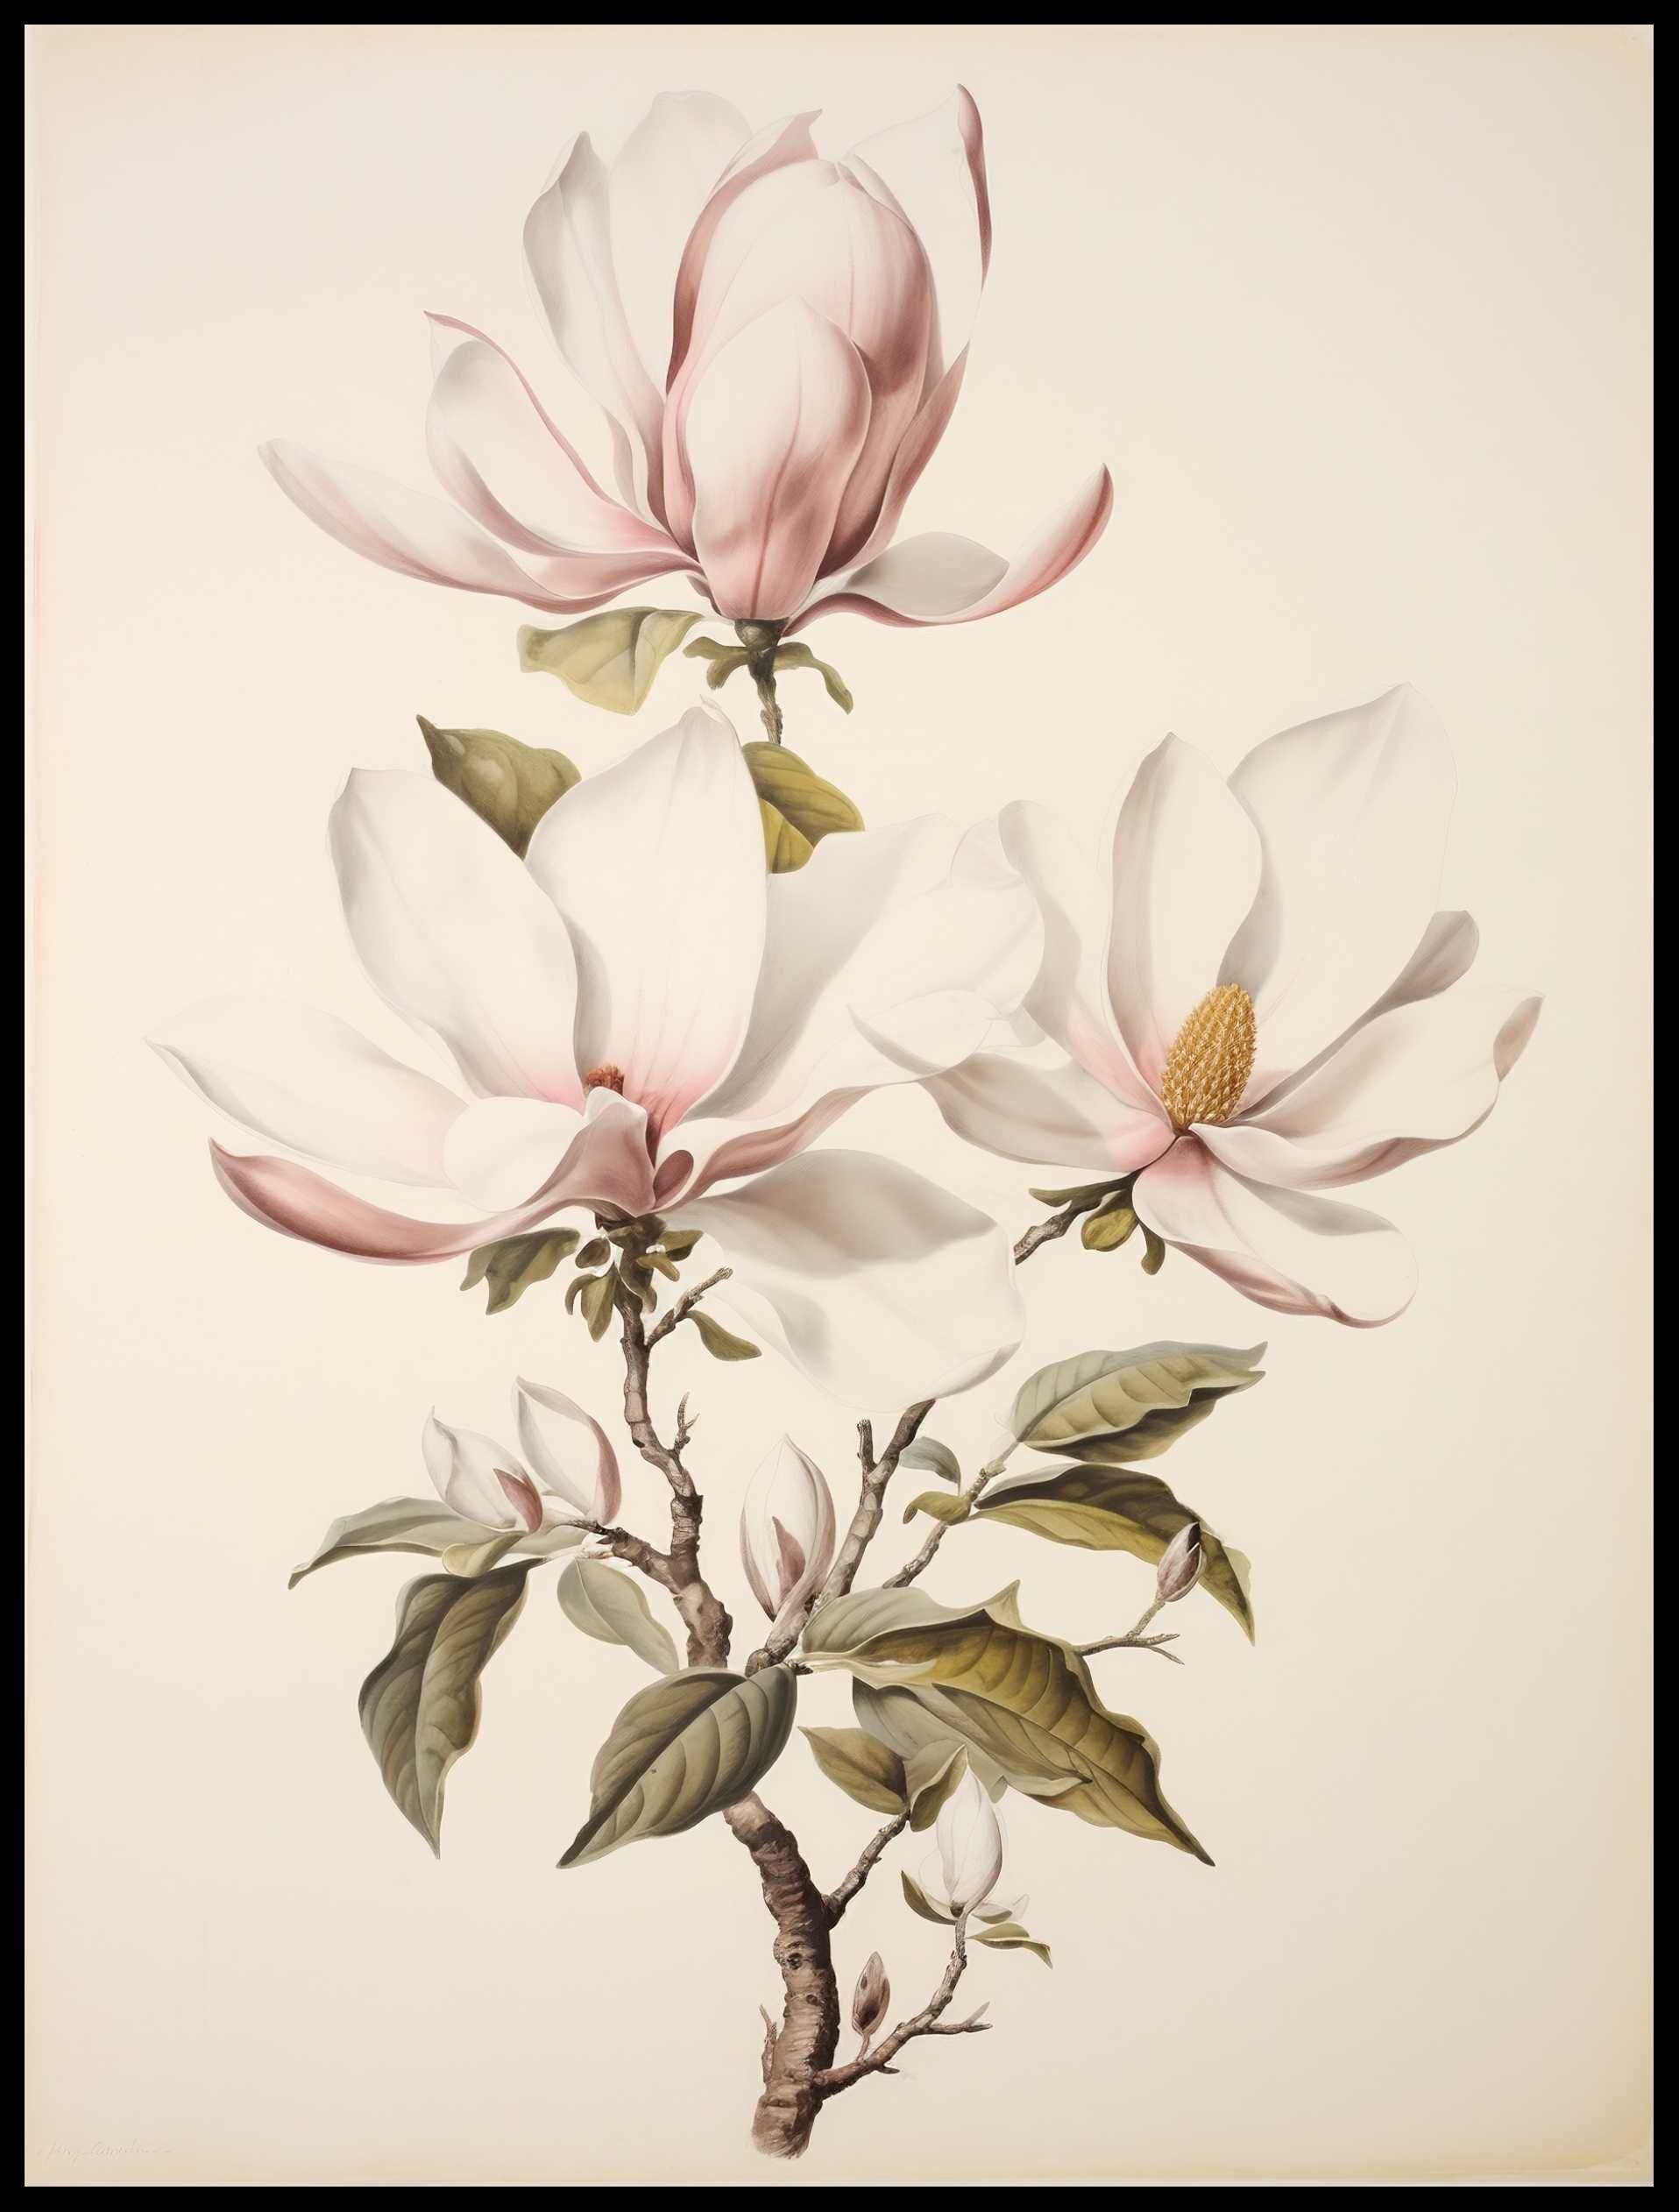 Plakat na Ścianę Obraz Kwiaty Minimalizm Rośliny Sztuka 50x70 cm